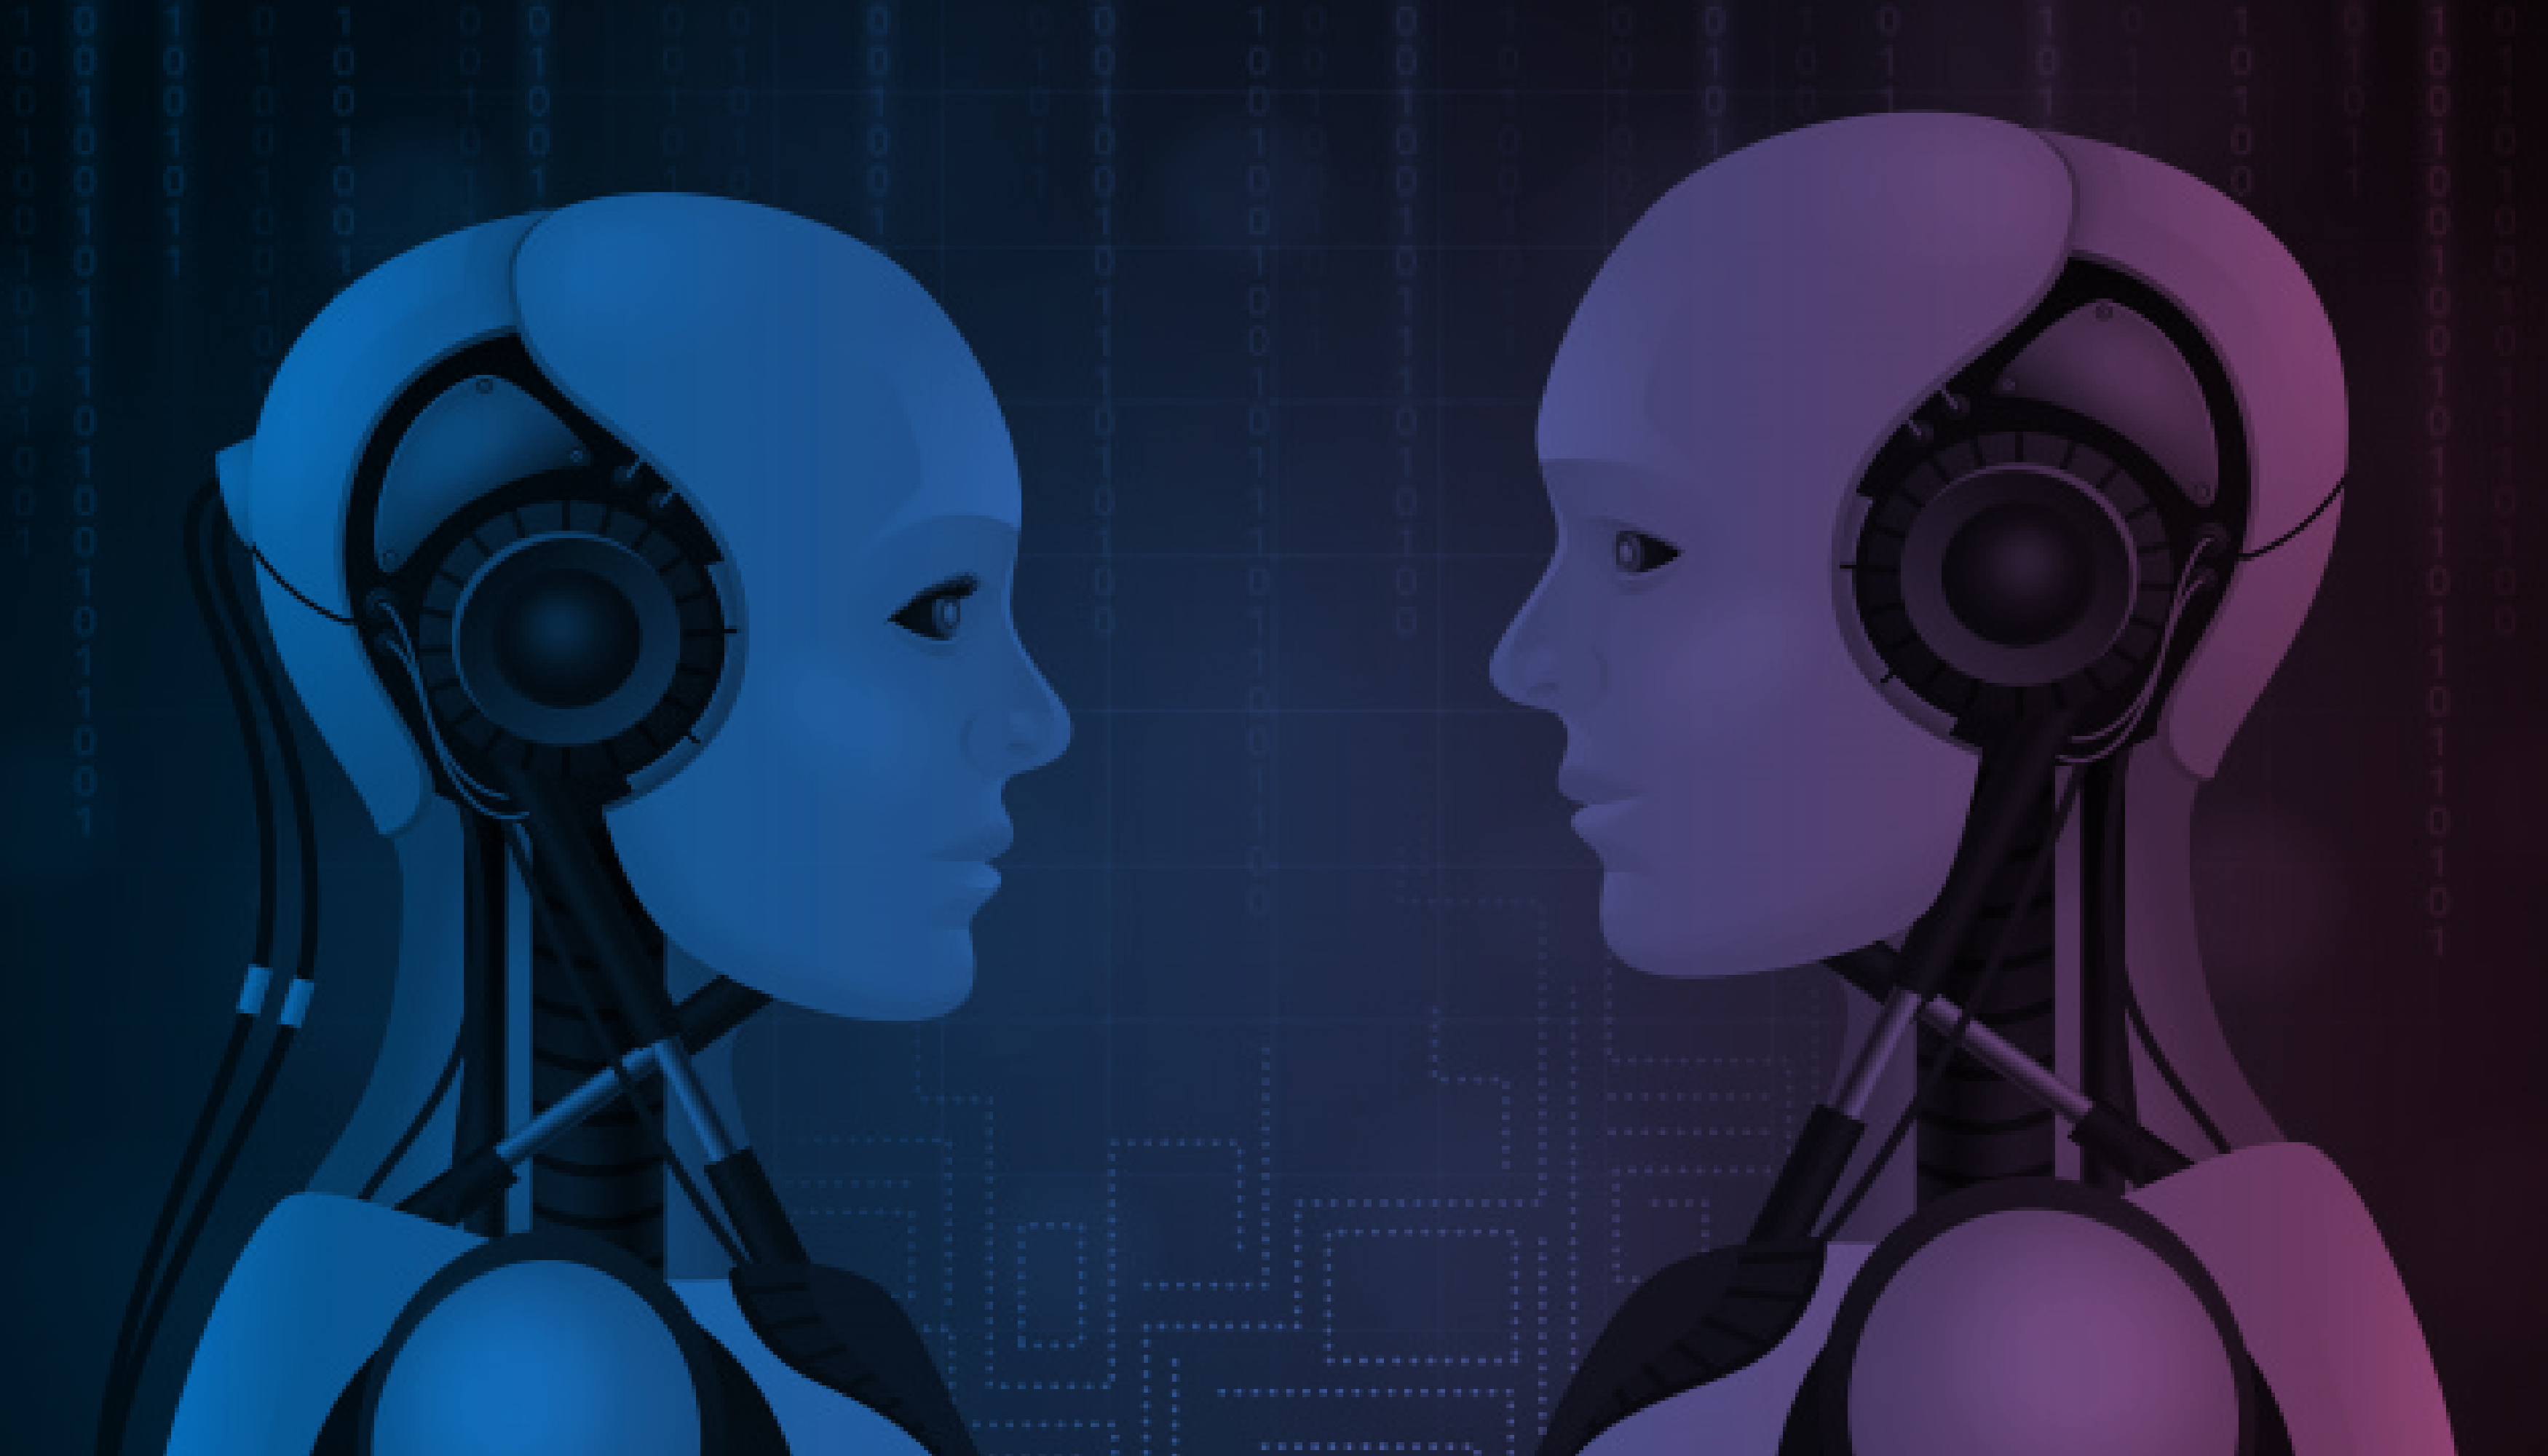 Artigo Inteligência artificial desperta discussões sobre confiabilidade e ética